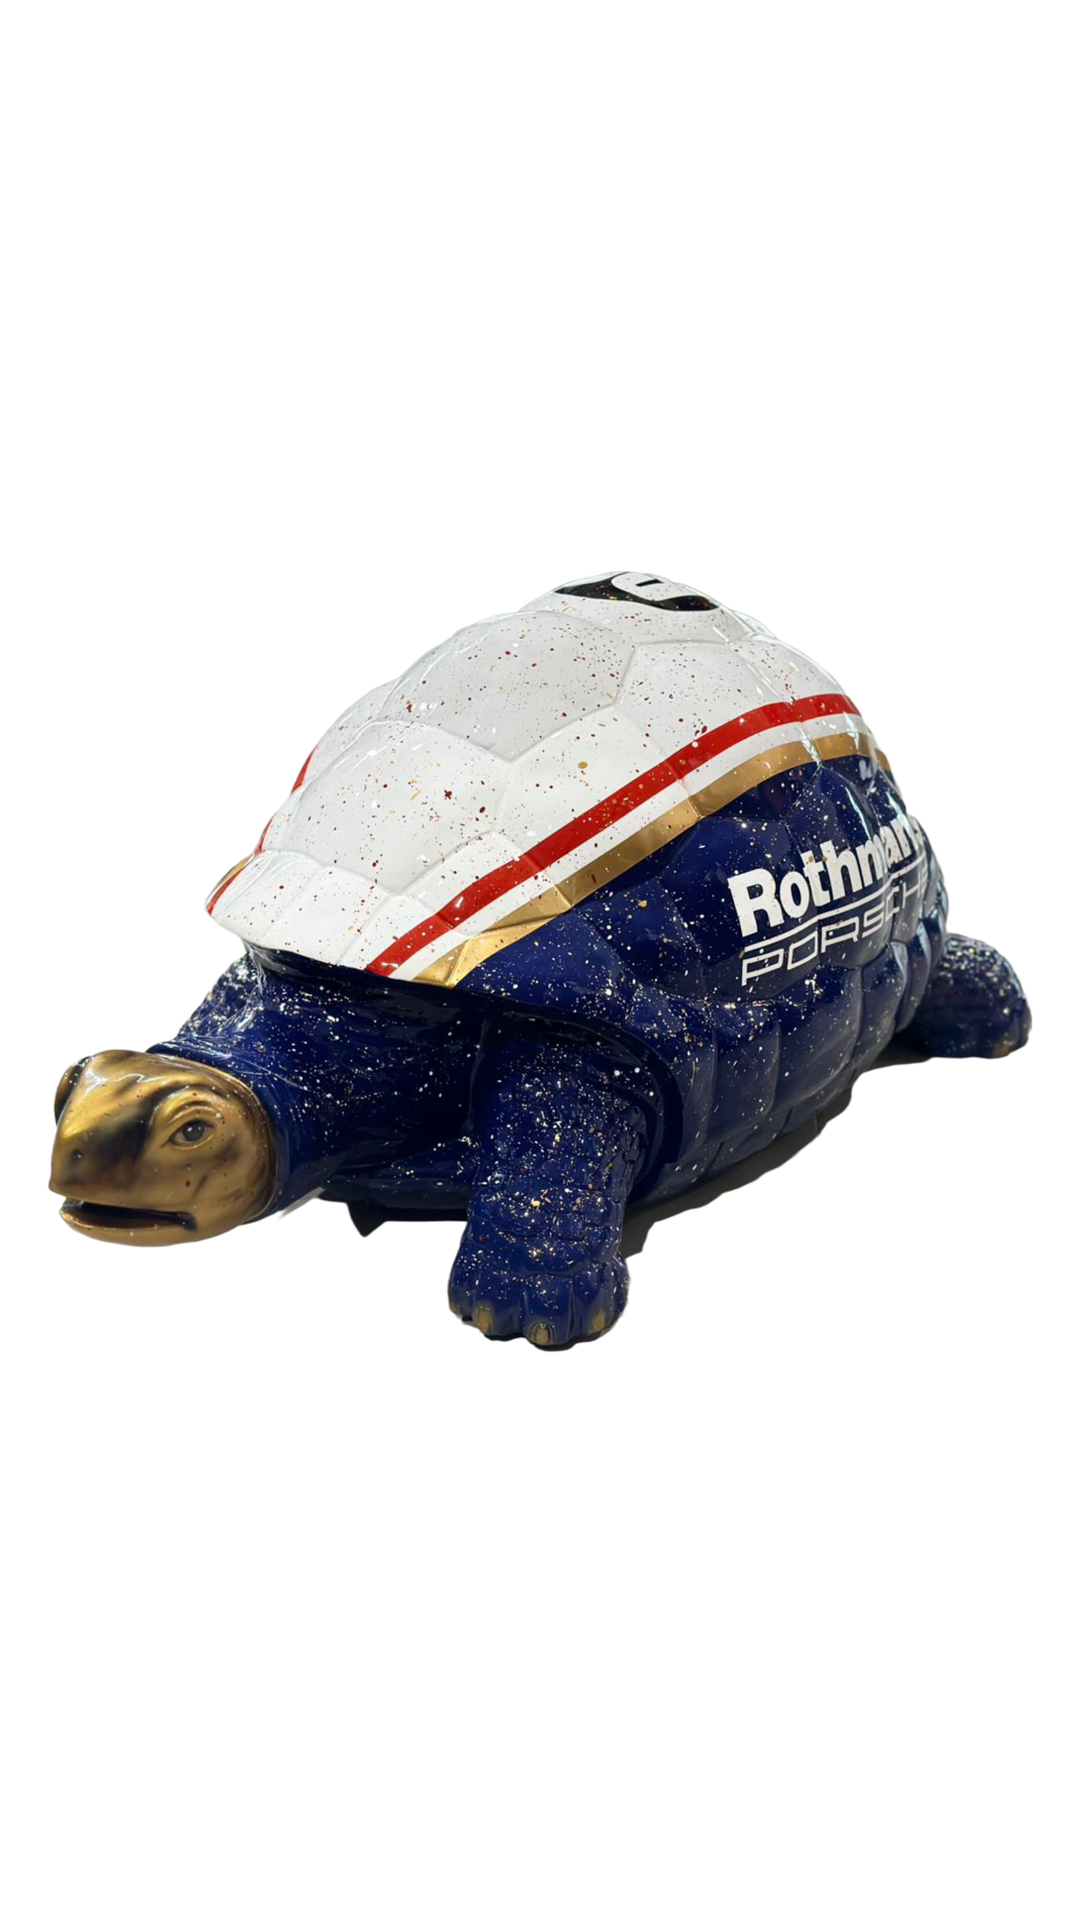 Rothmans Porsche Turtle